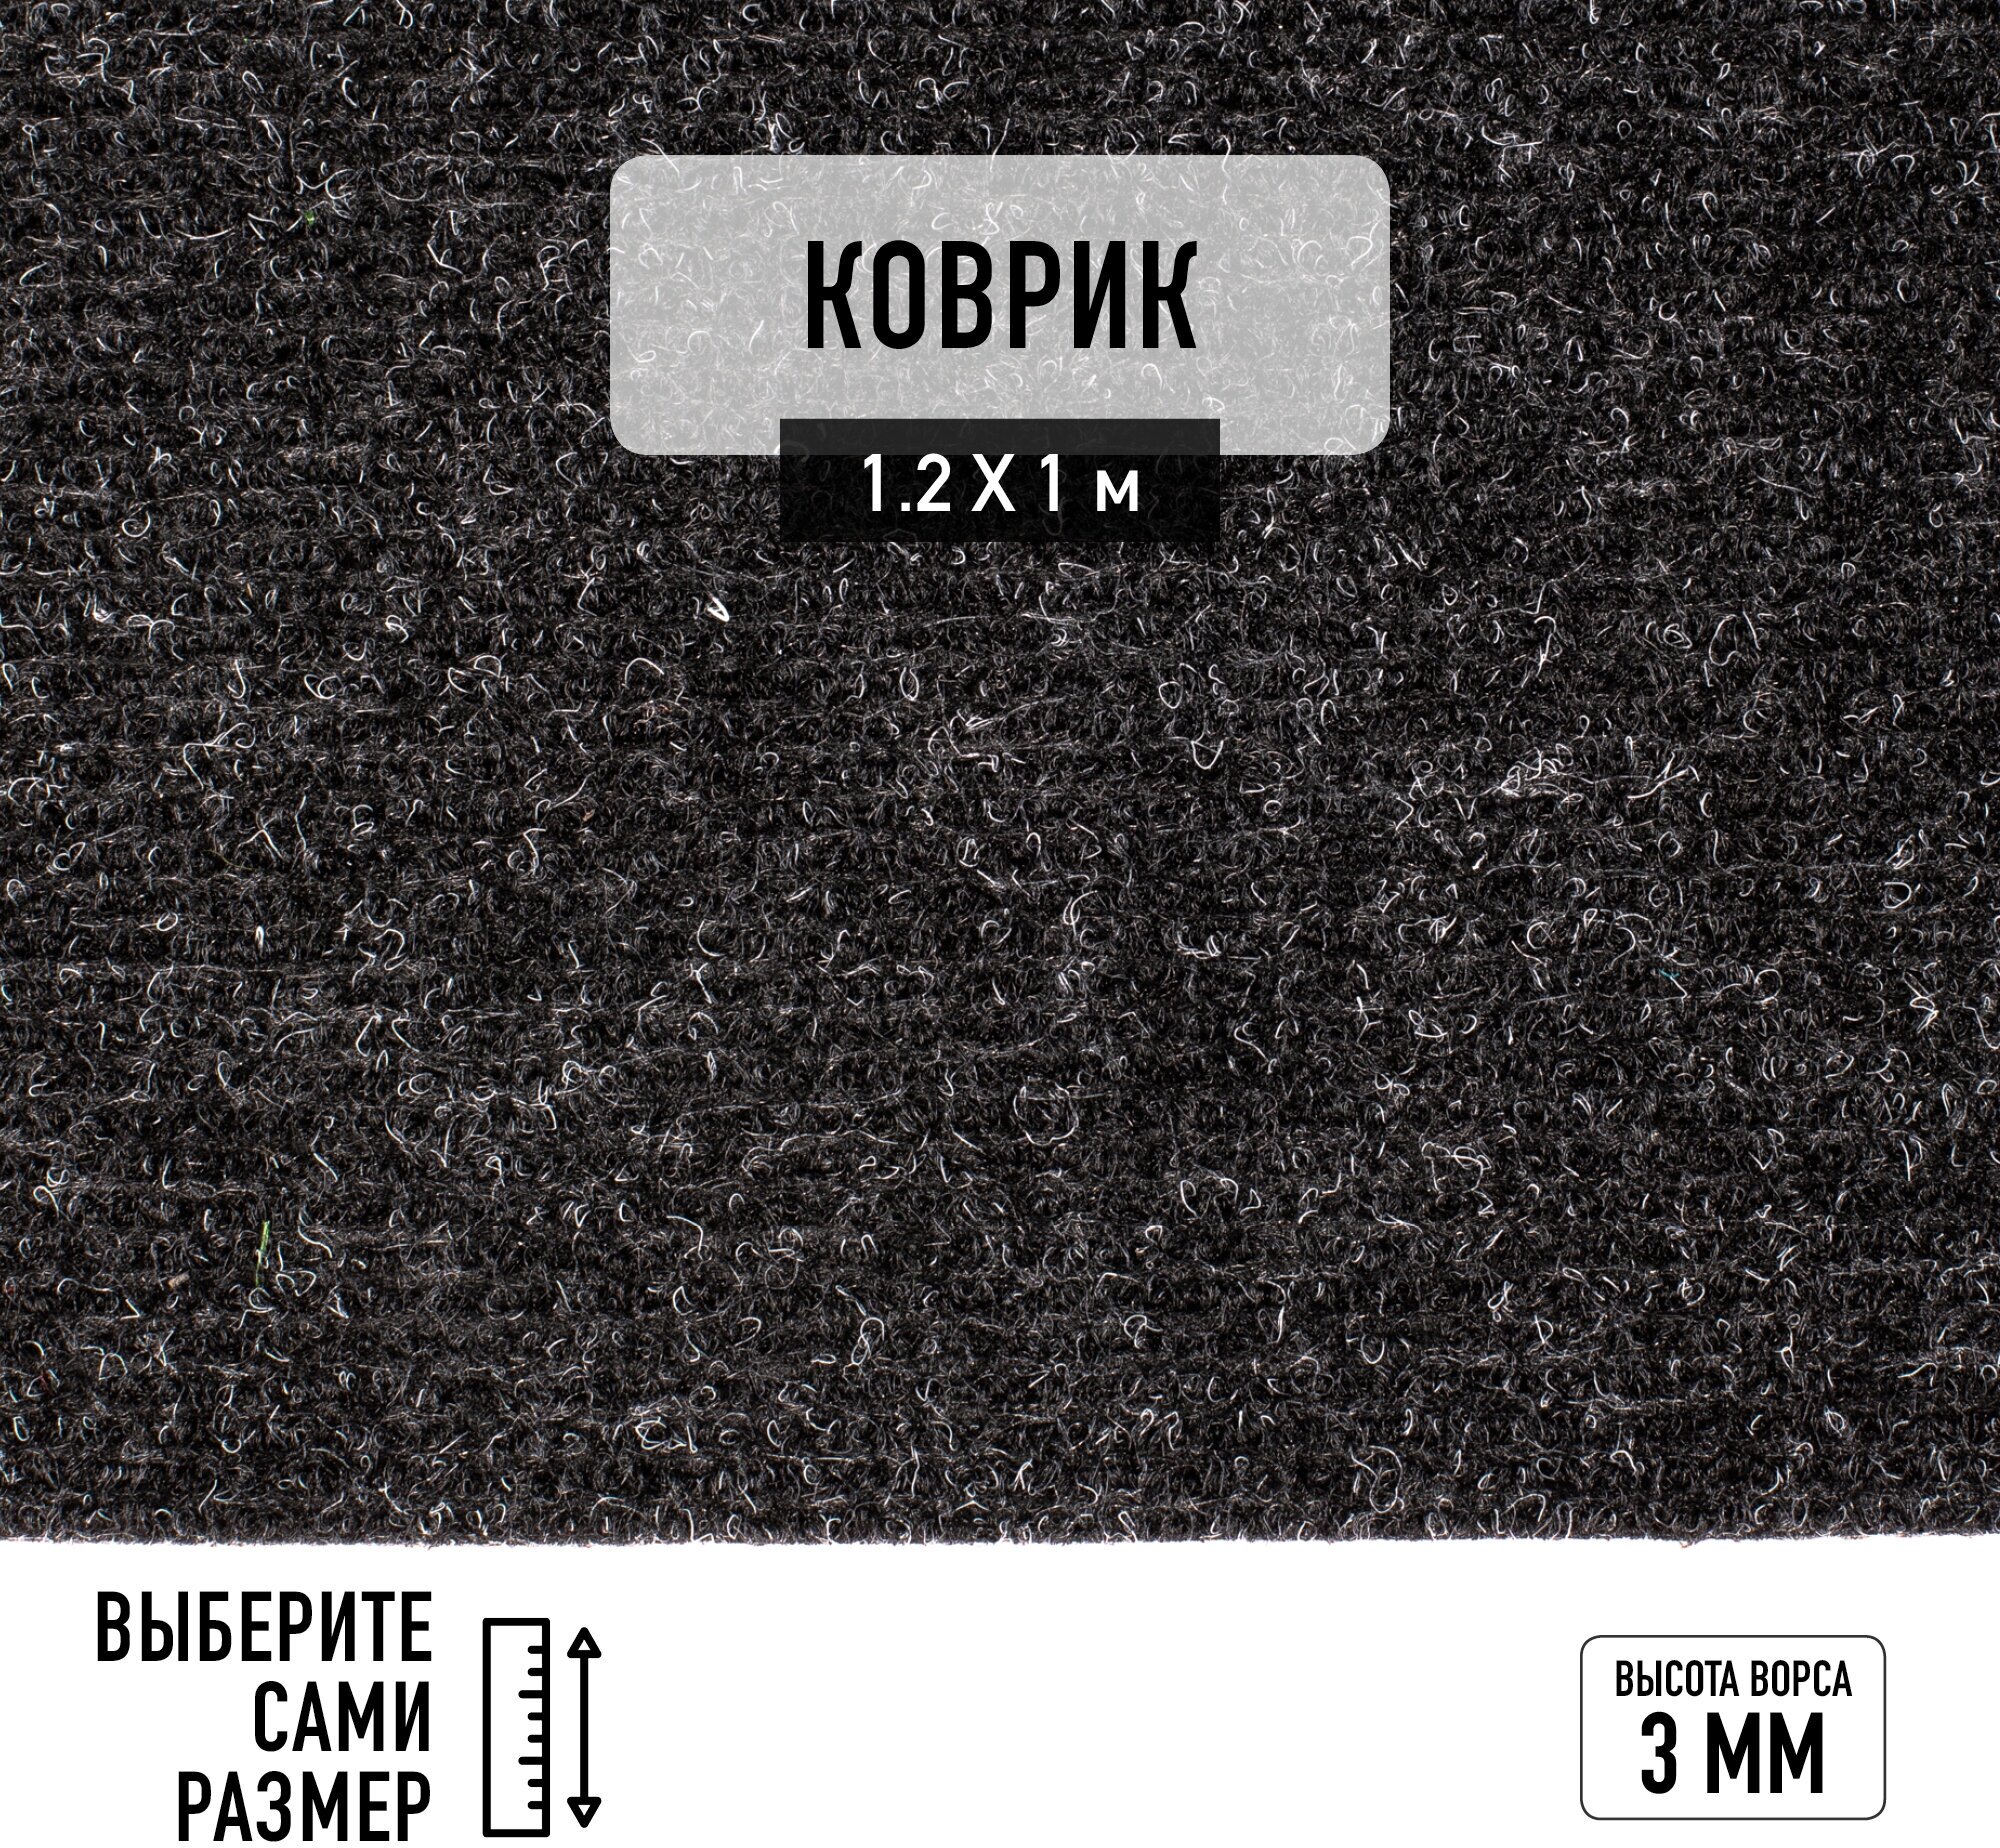 Иглопробивной коврик входной грязезащитный Betap "Dessert 78" на пол. Ковер черного цвета, размер 1,2х1м.